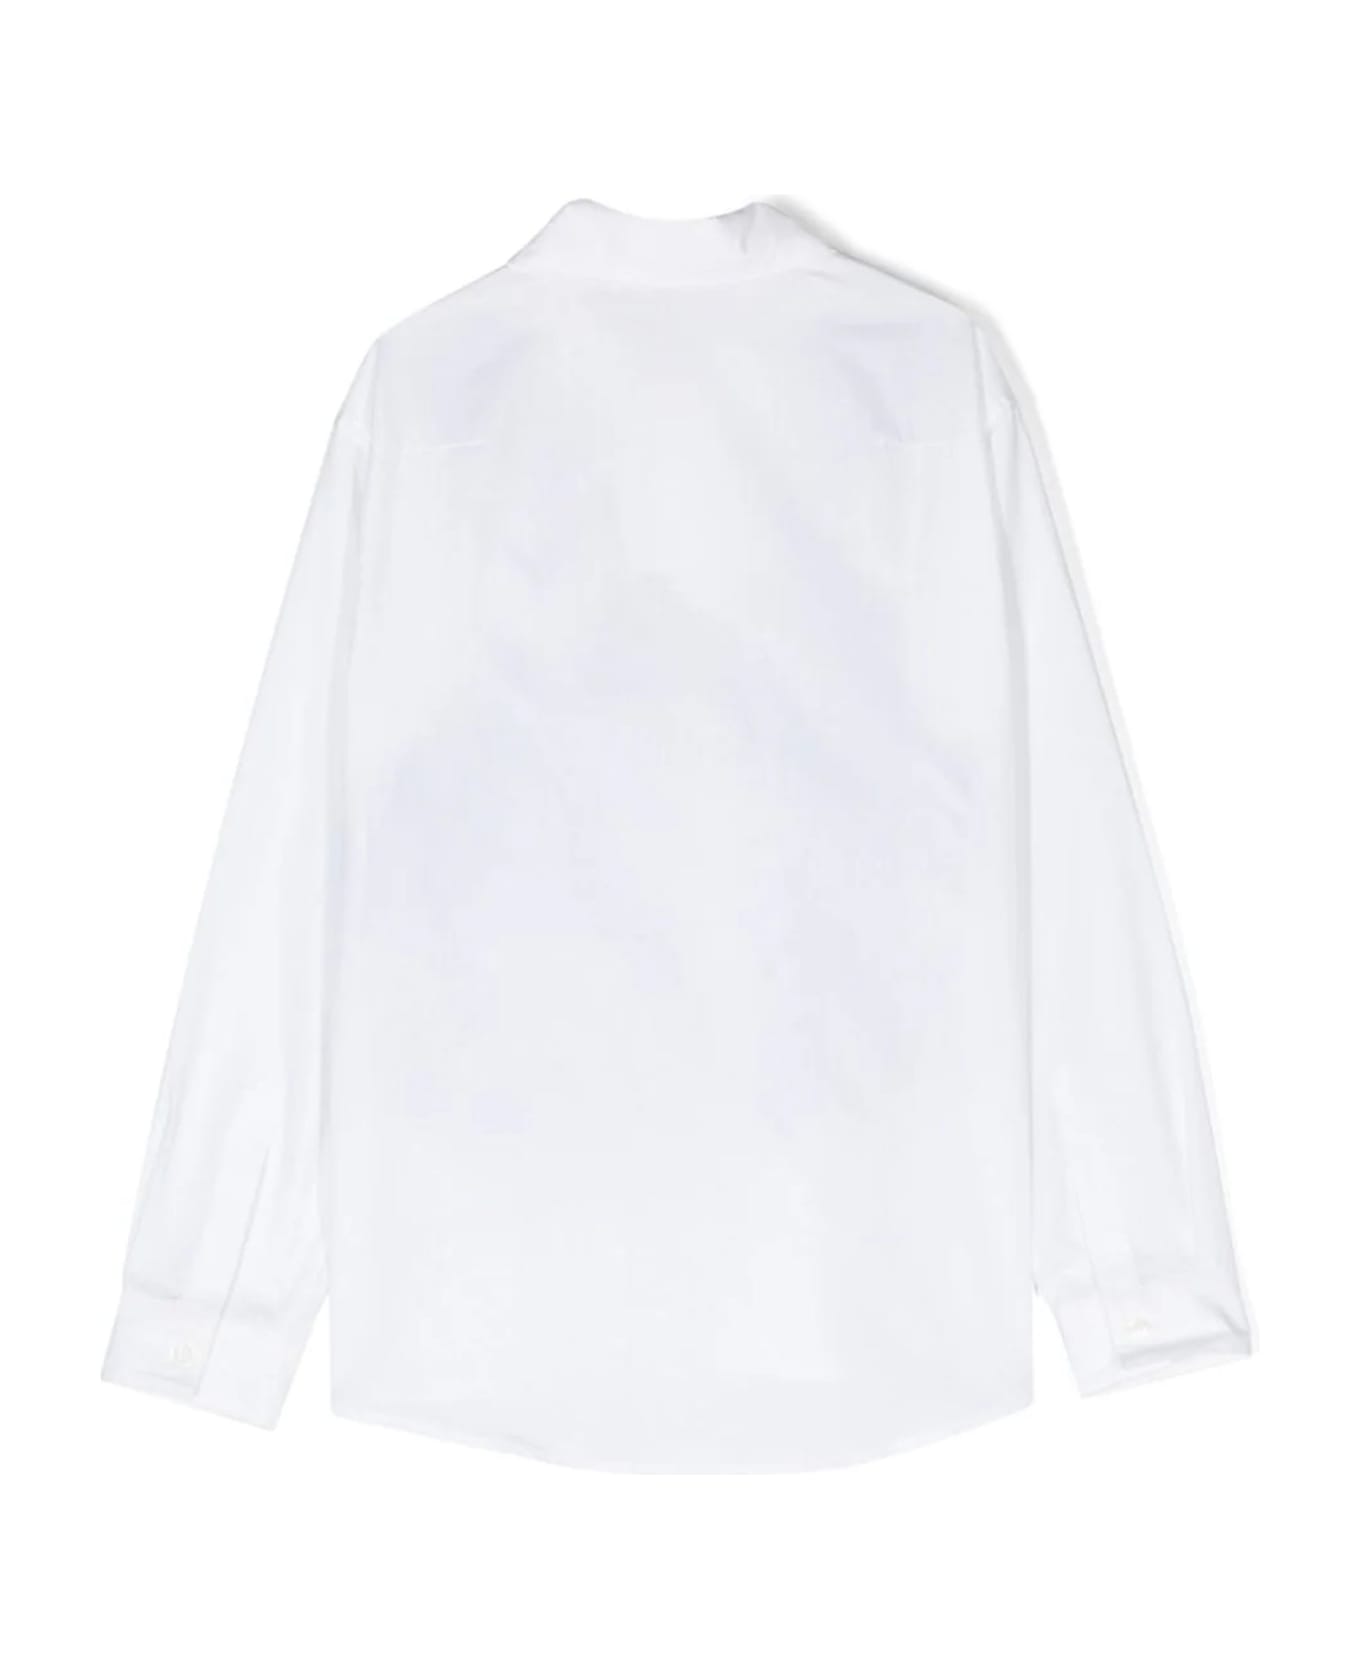 Missoni Shirts White - White シャツ